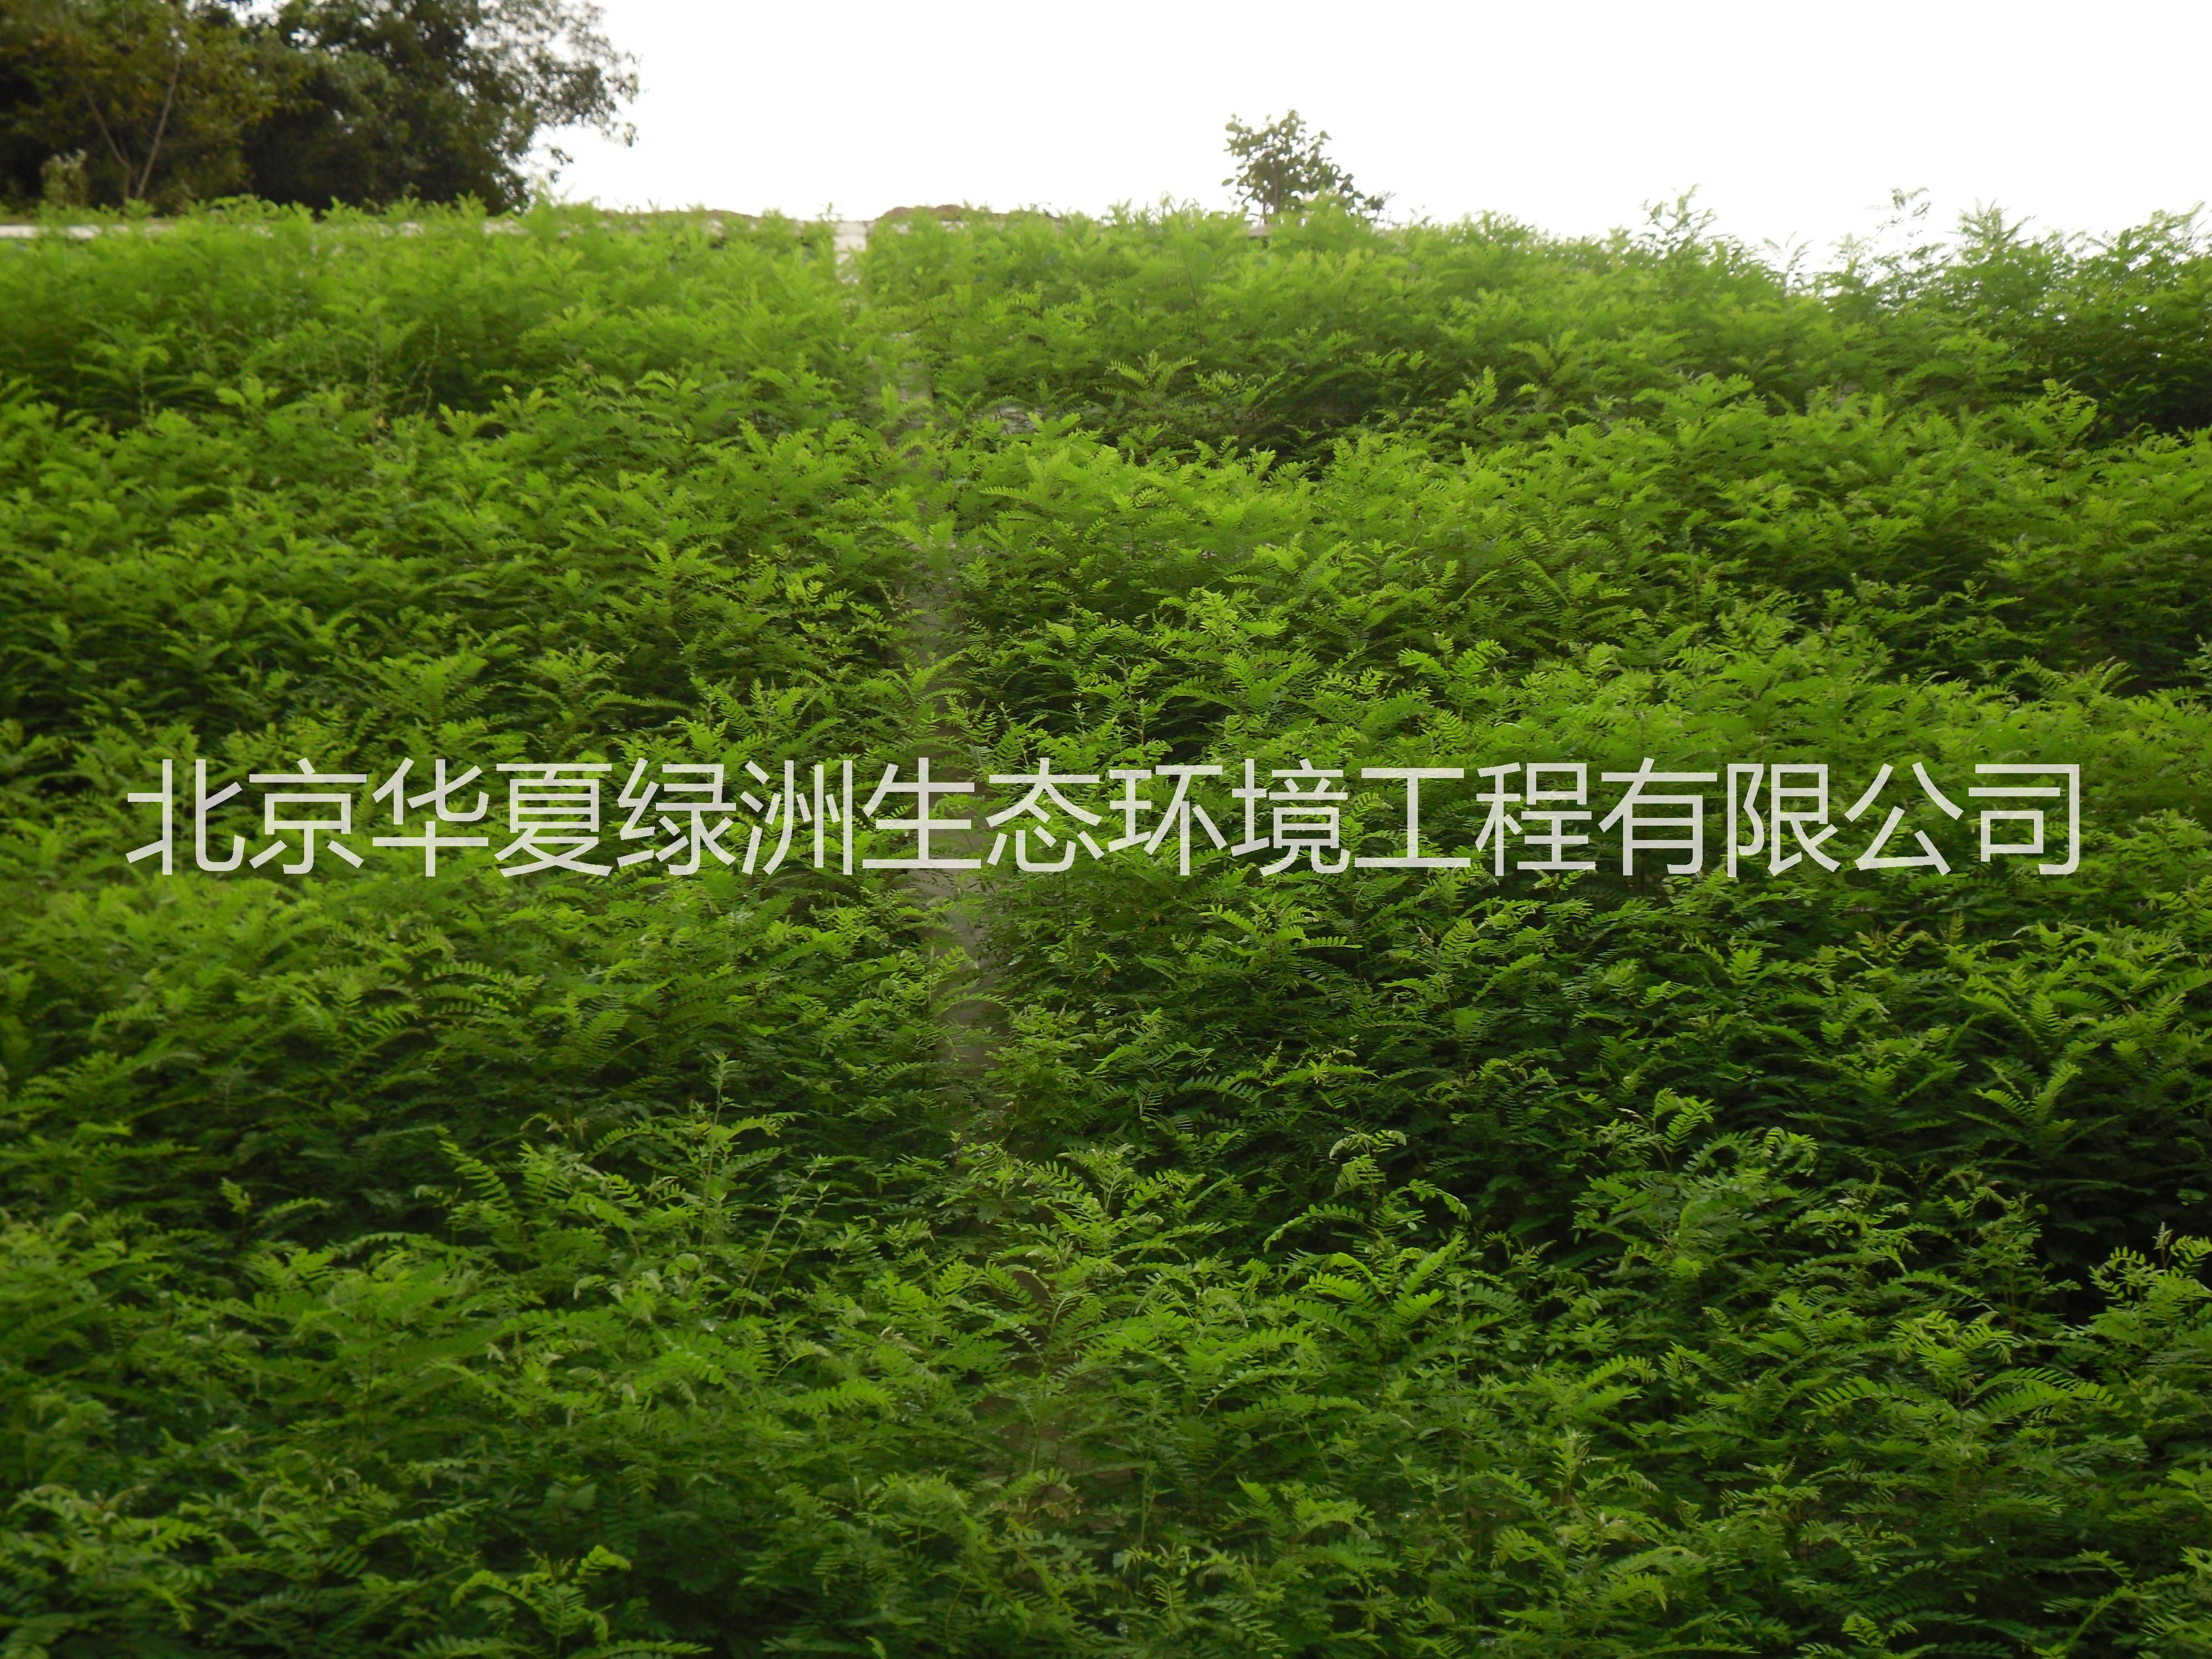 北京喷播绿化技术边坡 生态混凝土护坡技术 生态混凝土绿化护坡防洪工程 生态混凝土绿化护坡生态砼护坡 边坡框格梁植生袋护坡